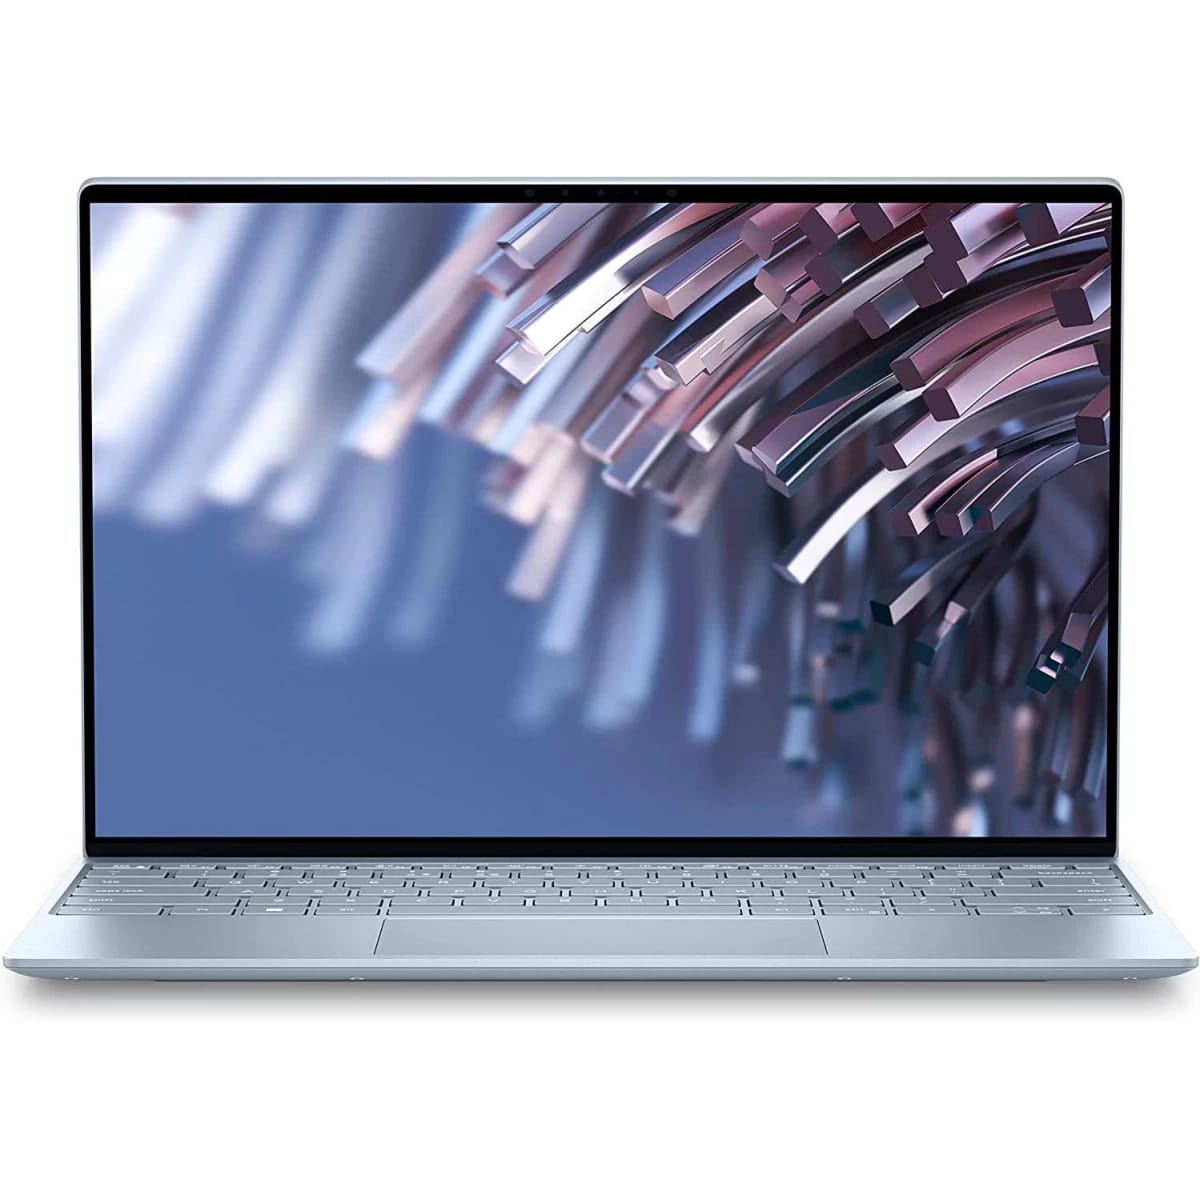 Dell Laptop XPS 13 9315-5116 Intel Core i7 12Gen up to 4.7Ghz 10-Cores 12M Cash